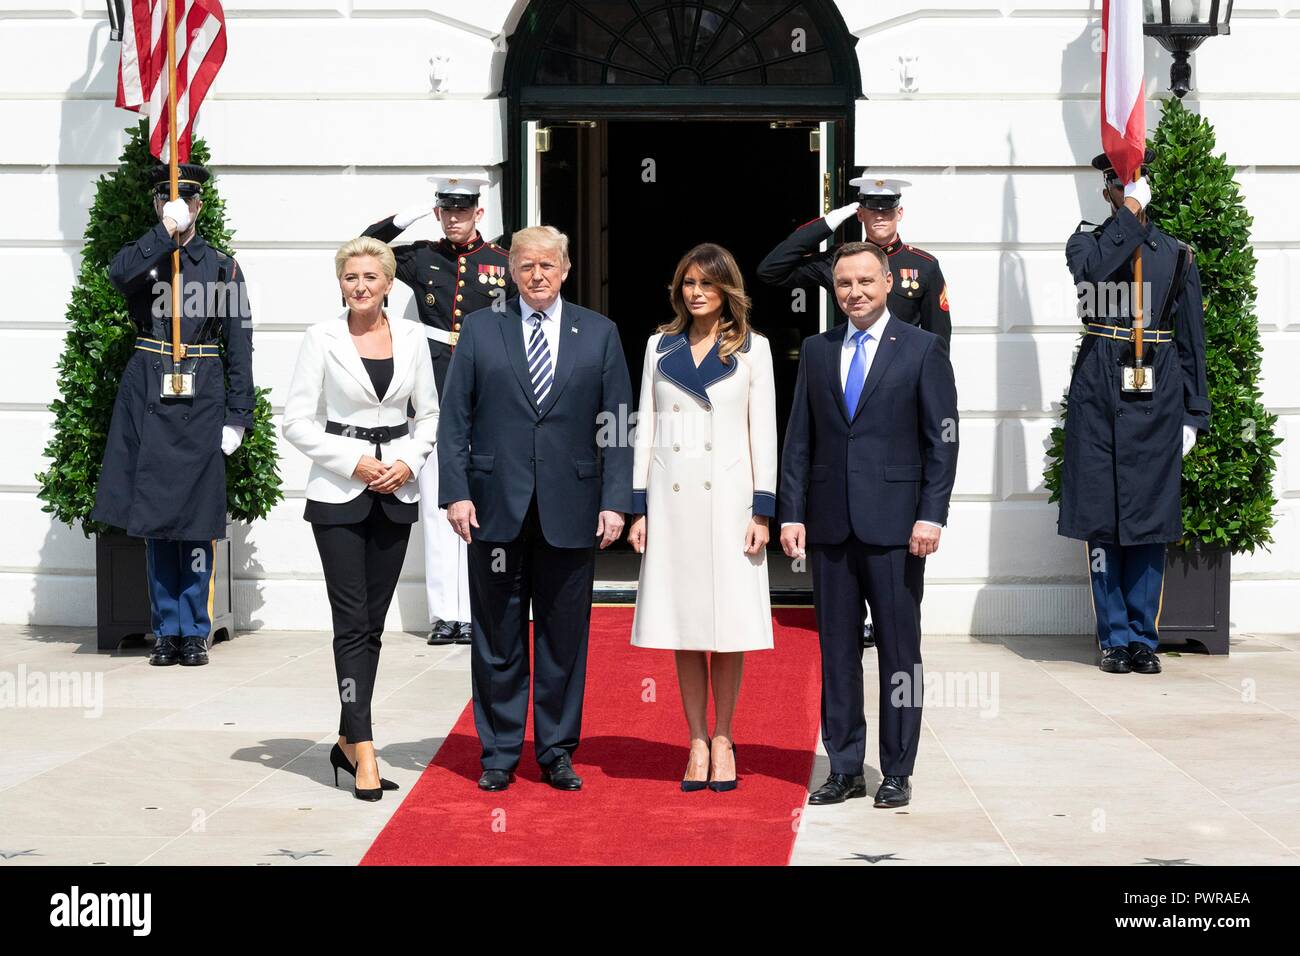 Président américain Donald Trump pose avec le président polonais Andrzej Duda, droite, sa femme Kornhauser-Duda Agata, gauche, et de la Première Dame Melania Trump, pendant la cérémonie d'arrivée officielle à la Maison Blanche le 18 septembre 2018 à Washington, DC. Banque D'Images